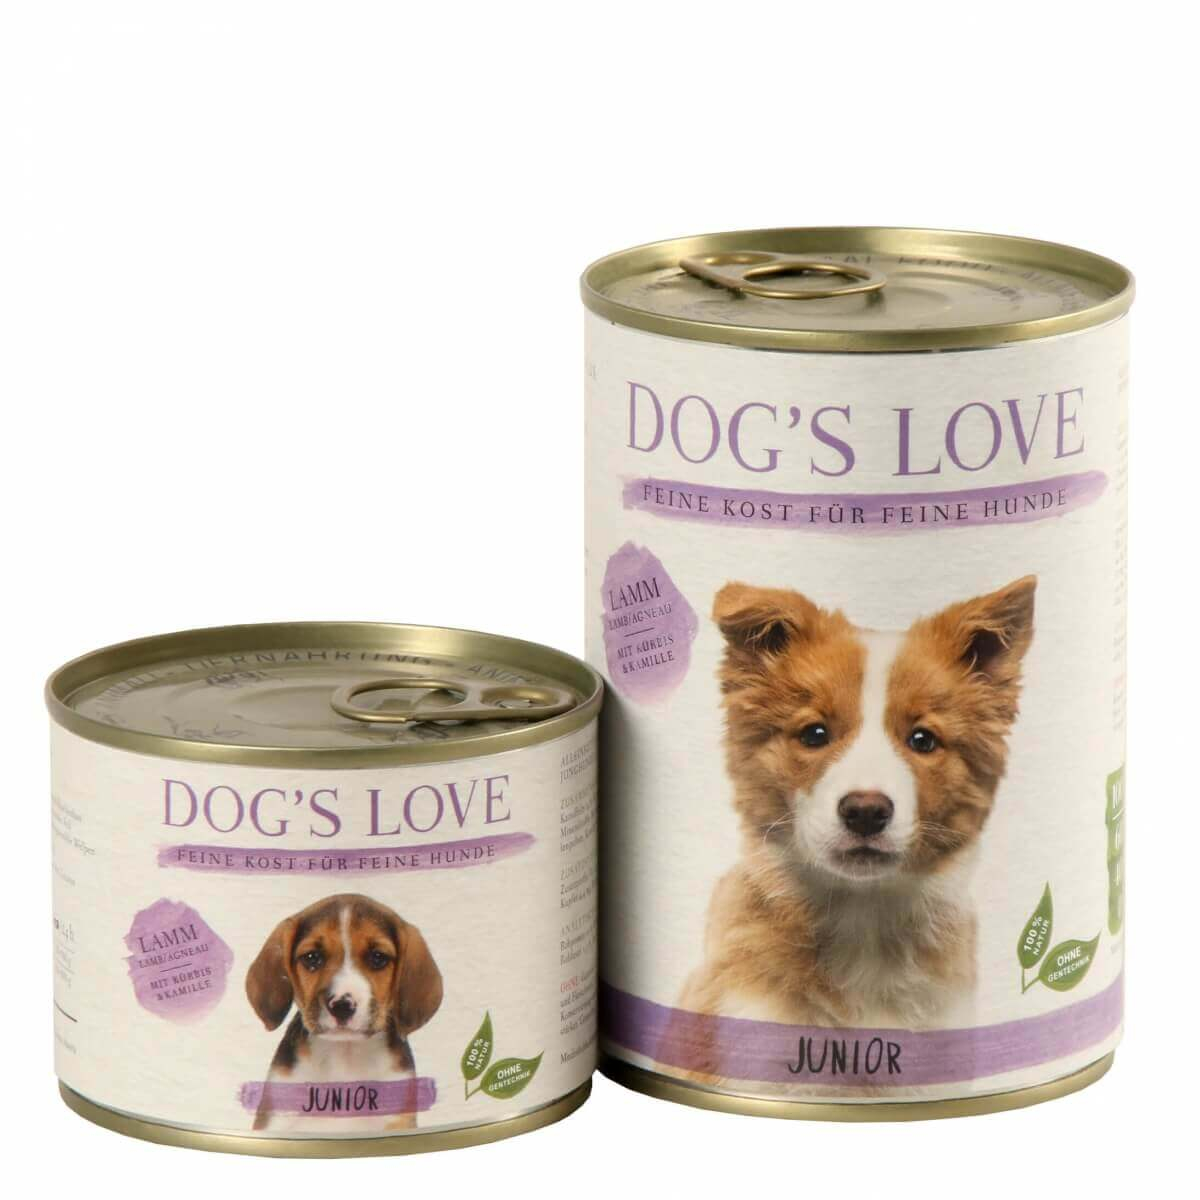 Patê cordeiro DOG'S LOVE para cachorros e junior